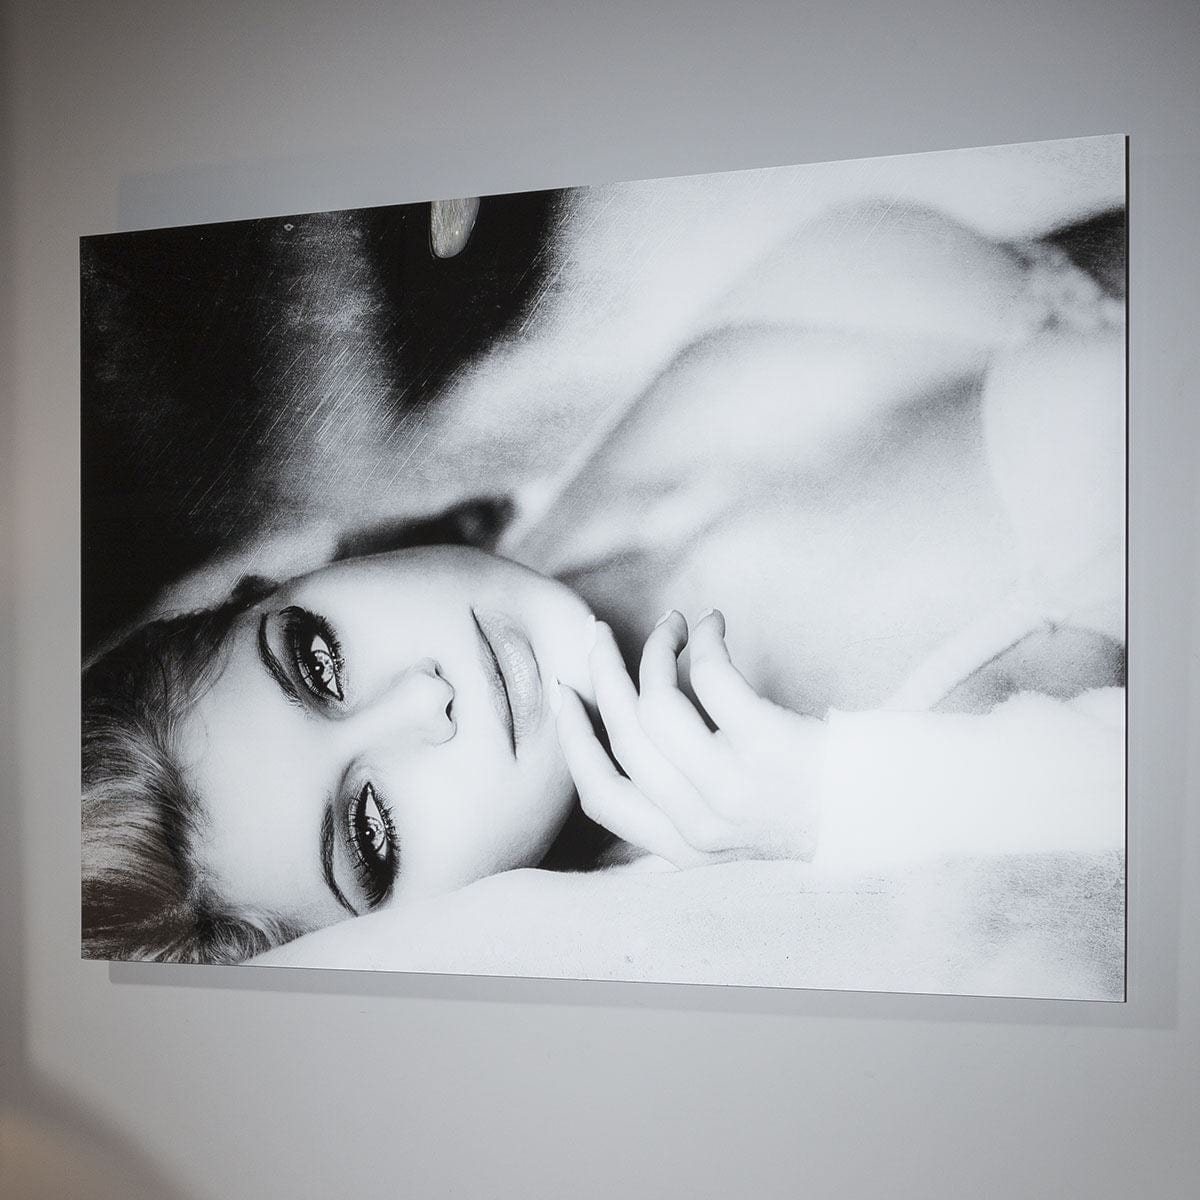 Quatropi Stunning Large photographic 800x1200 Art On Acrylic Eyes On You.Gn7559